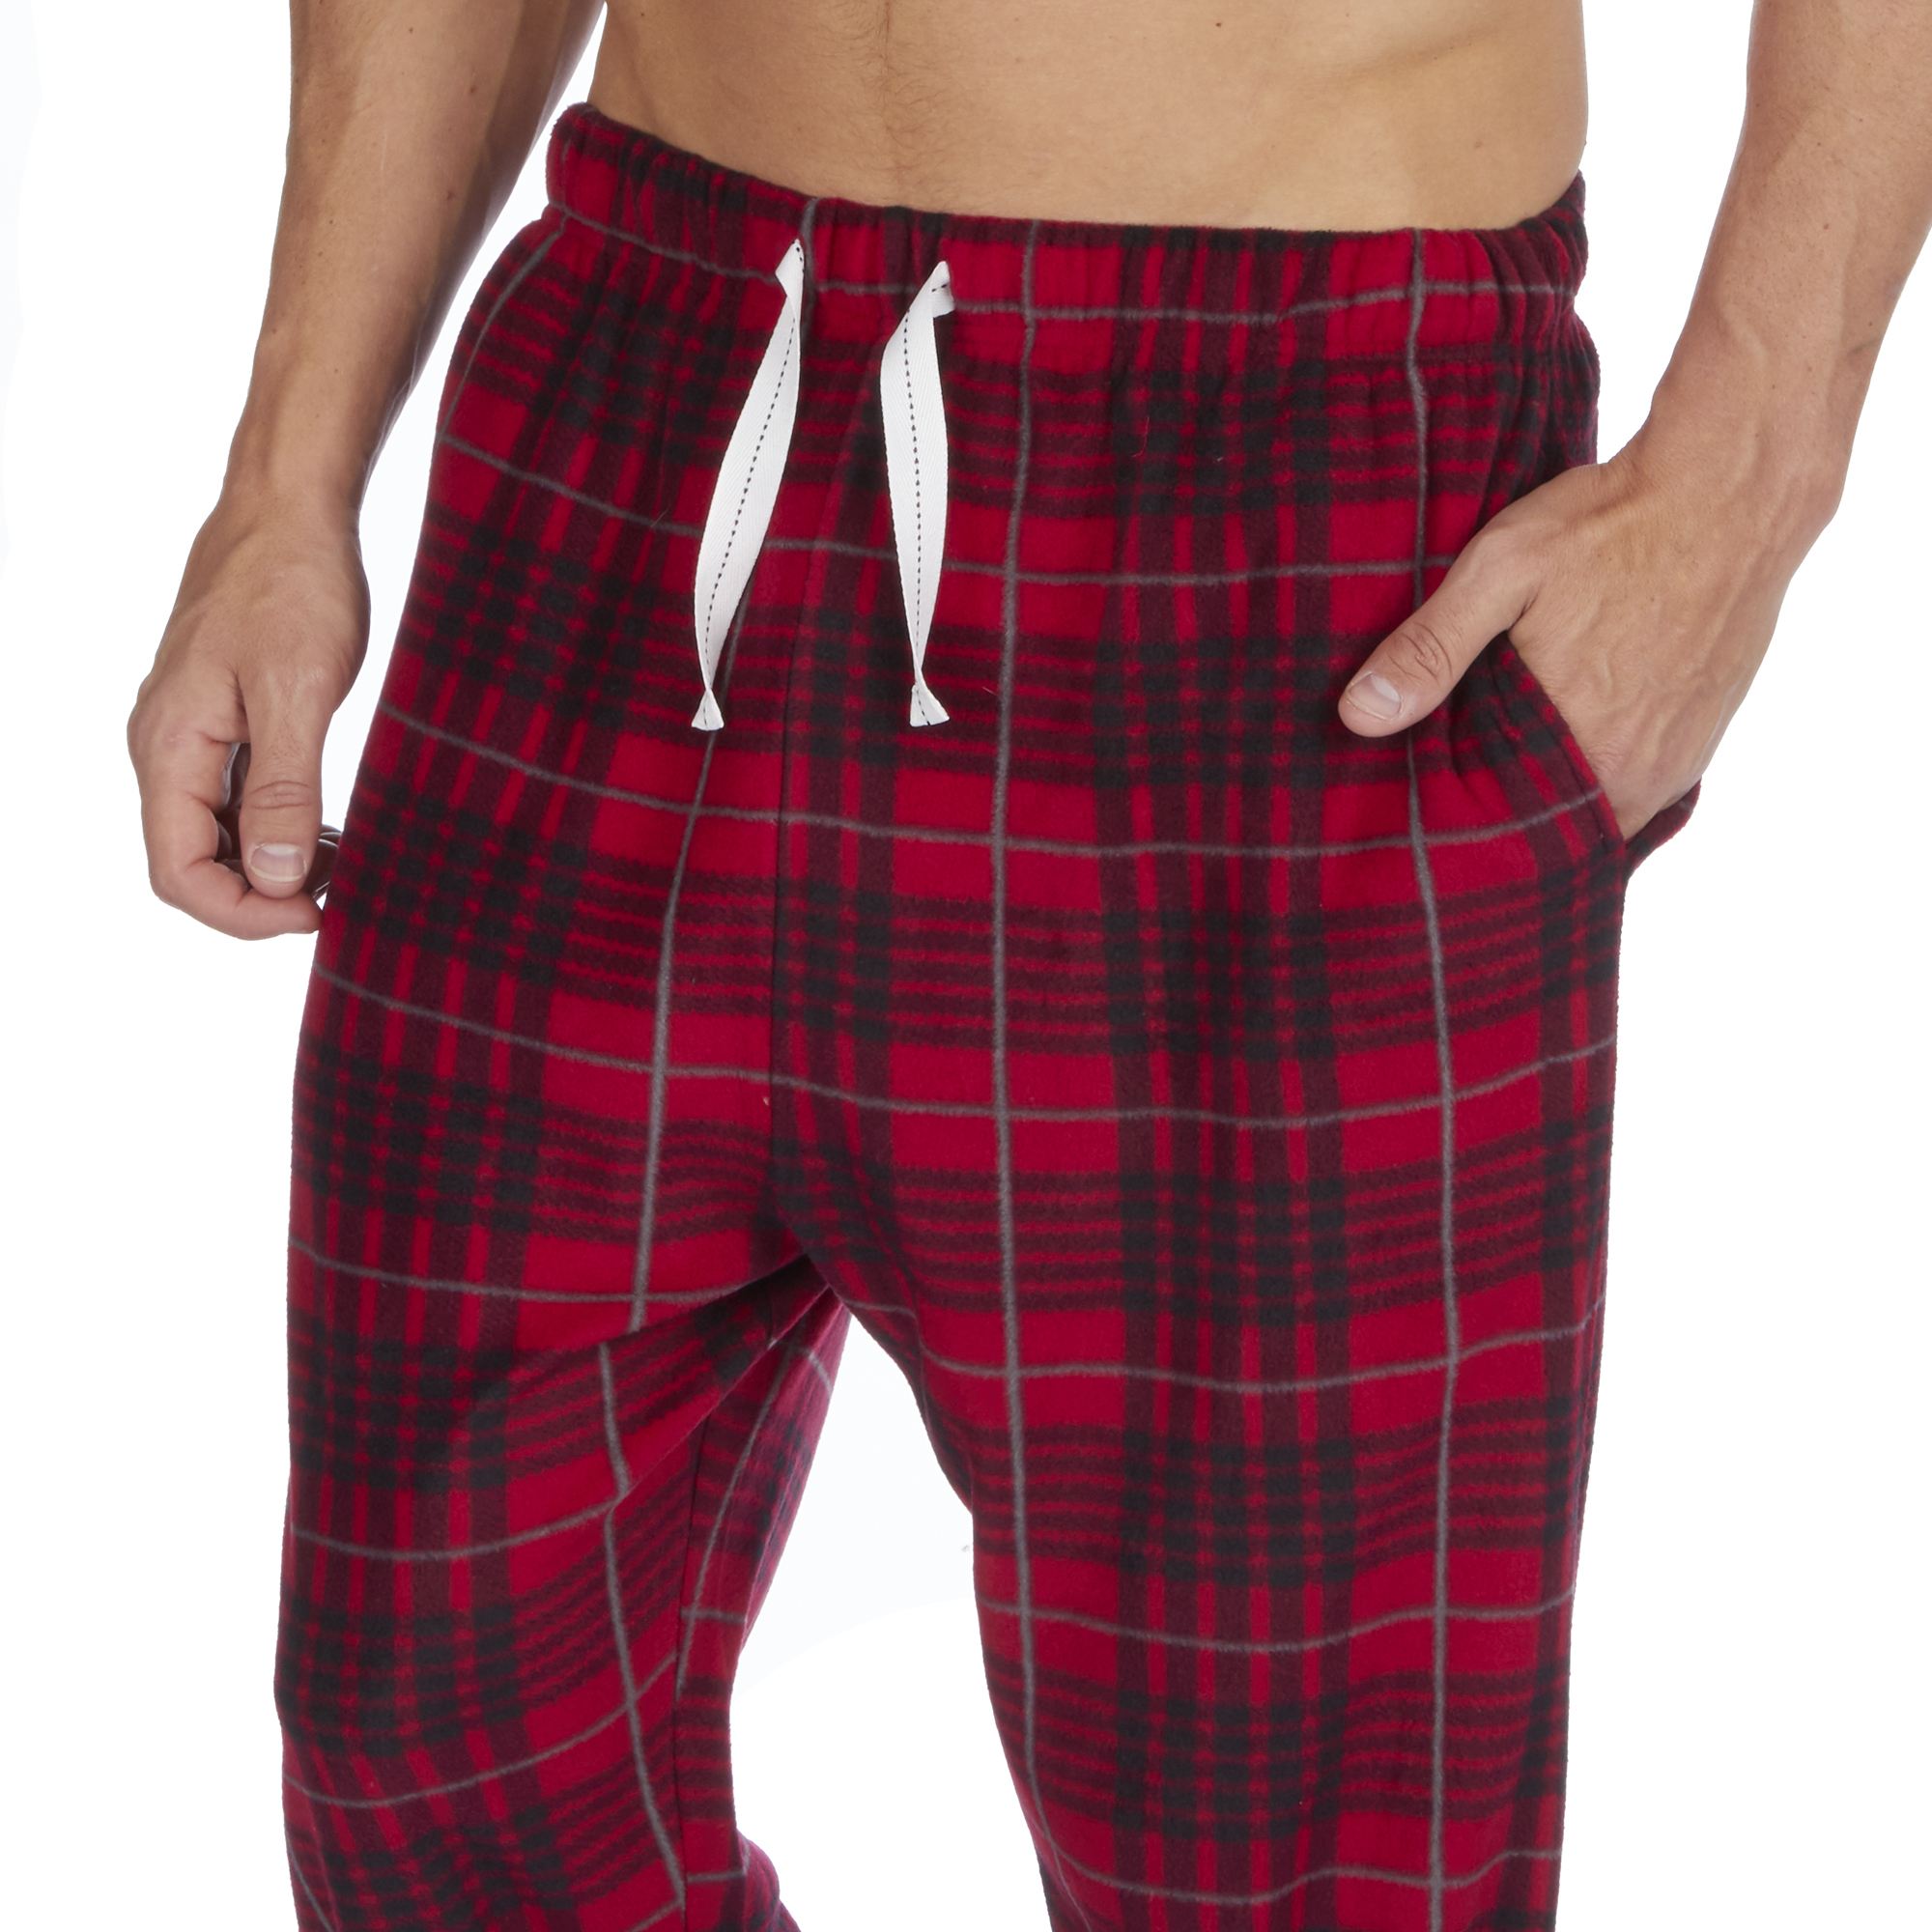 Mens Soft Warm Microfleece Checked Lounge Pyjama PJ Bottoms Pants Sizes S- XXL | eBay